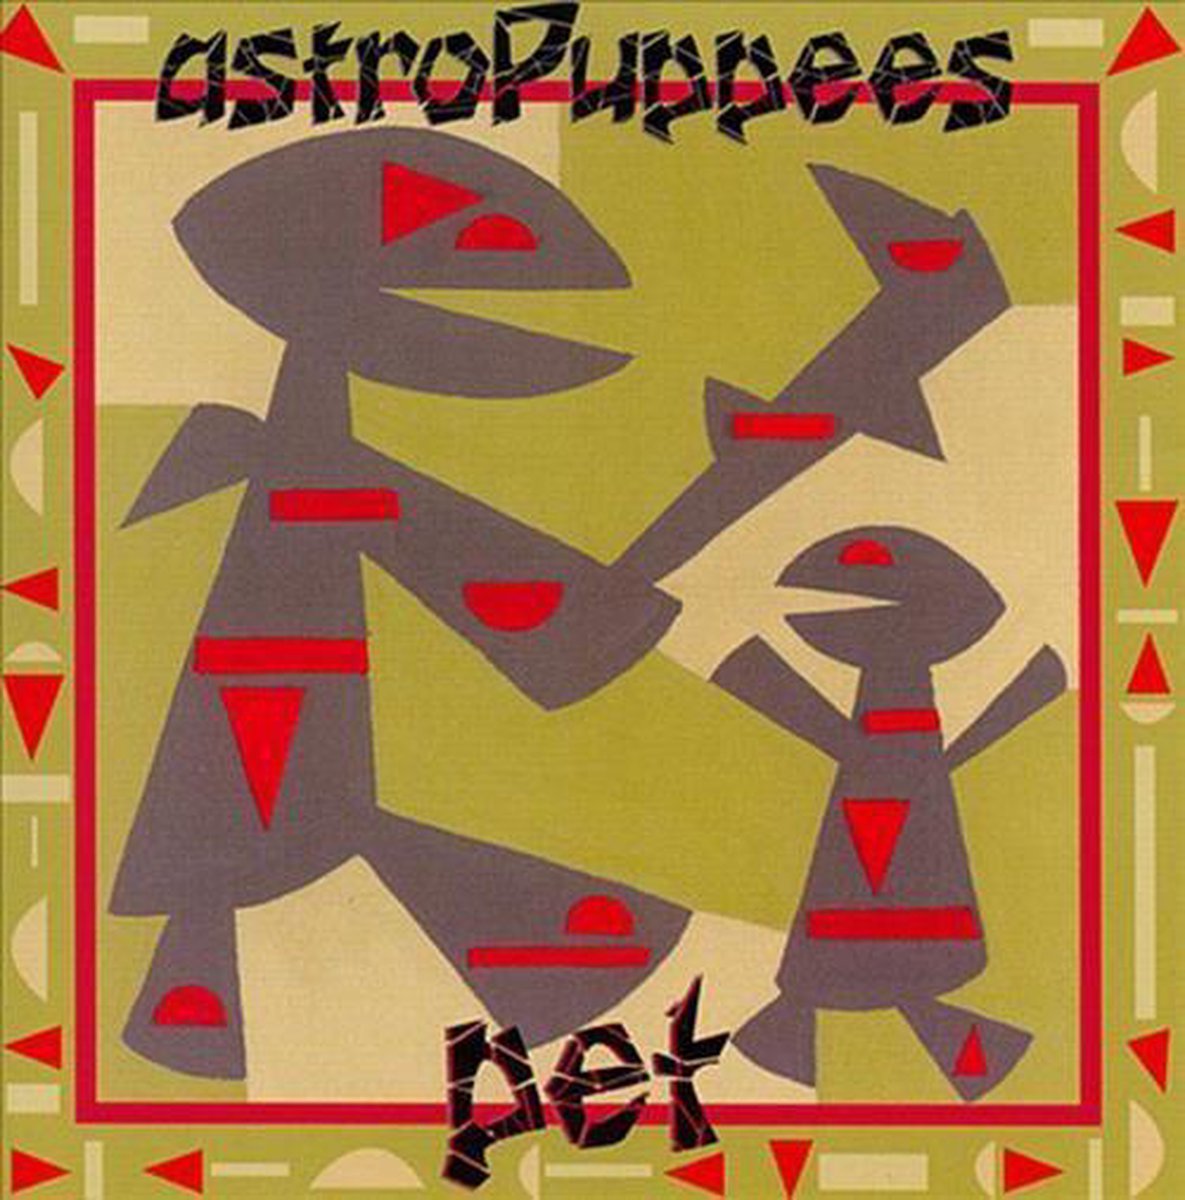 Astropuppees - Pet (CD)